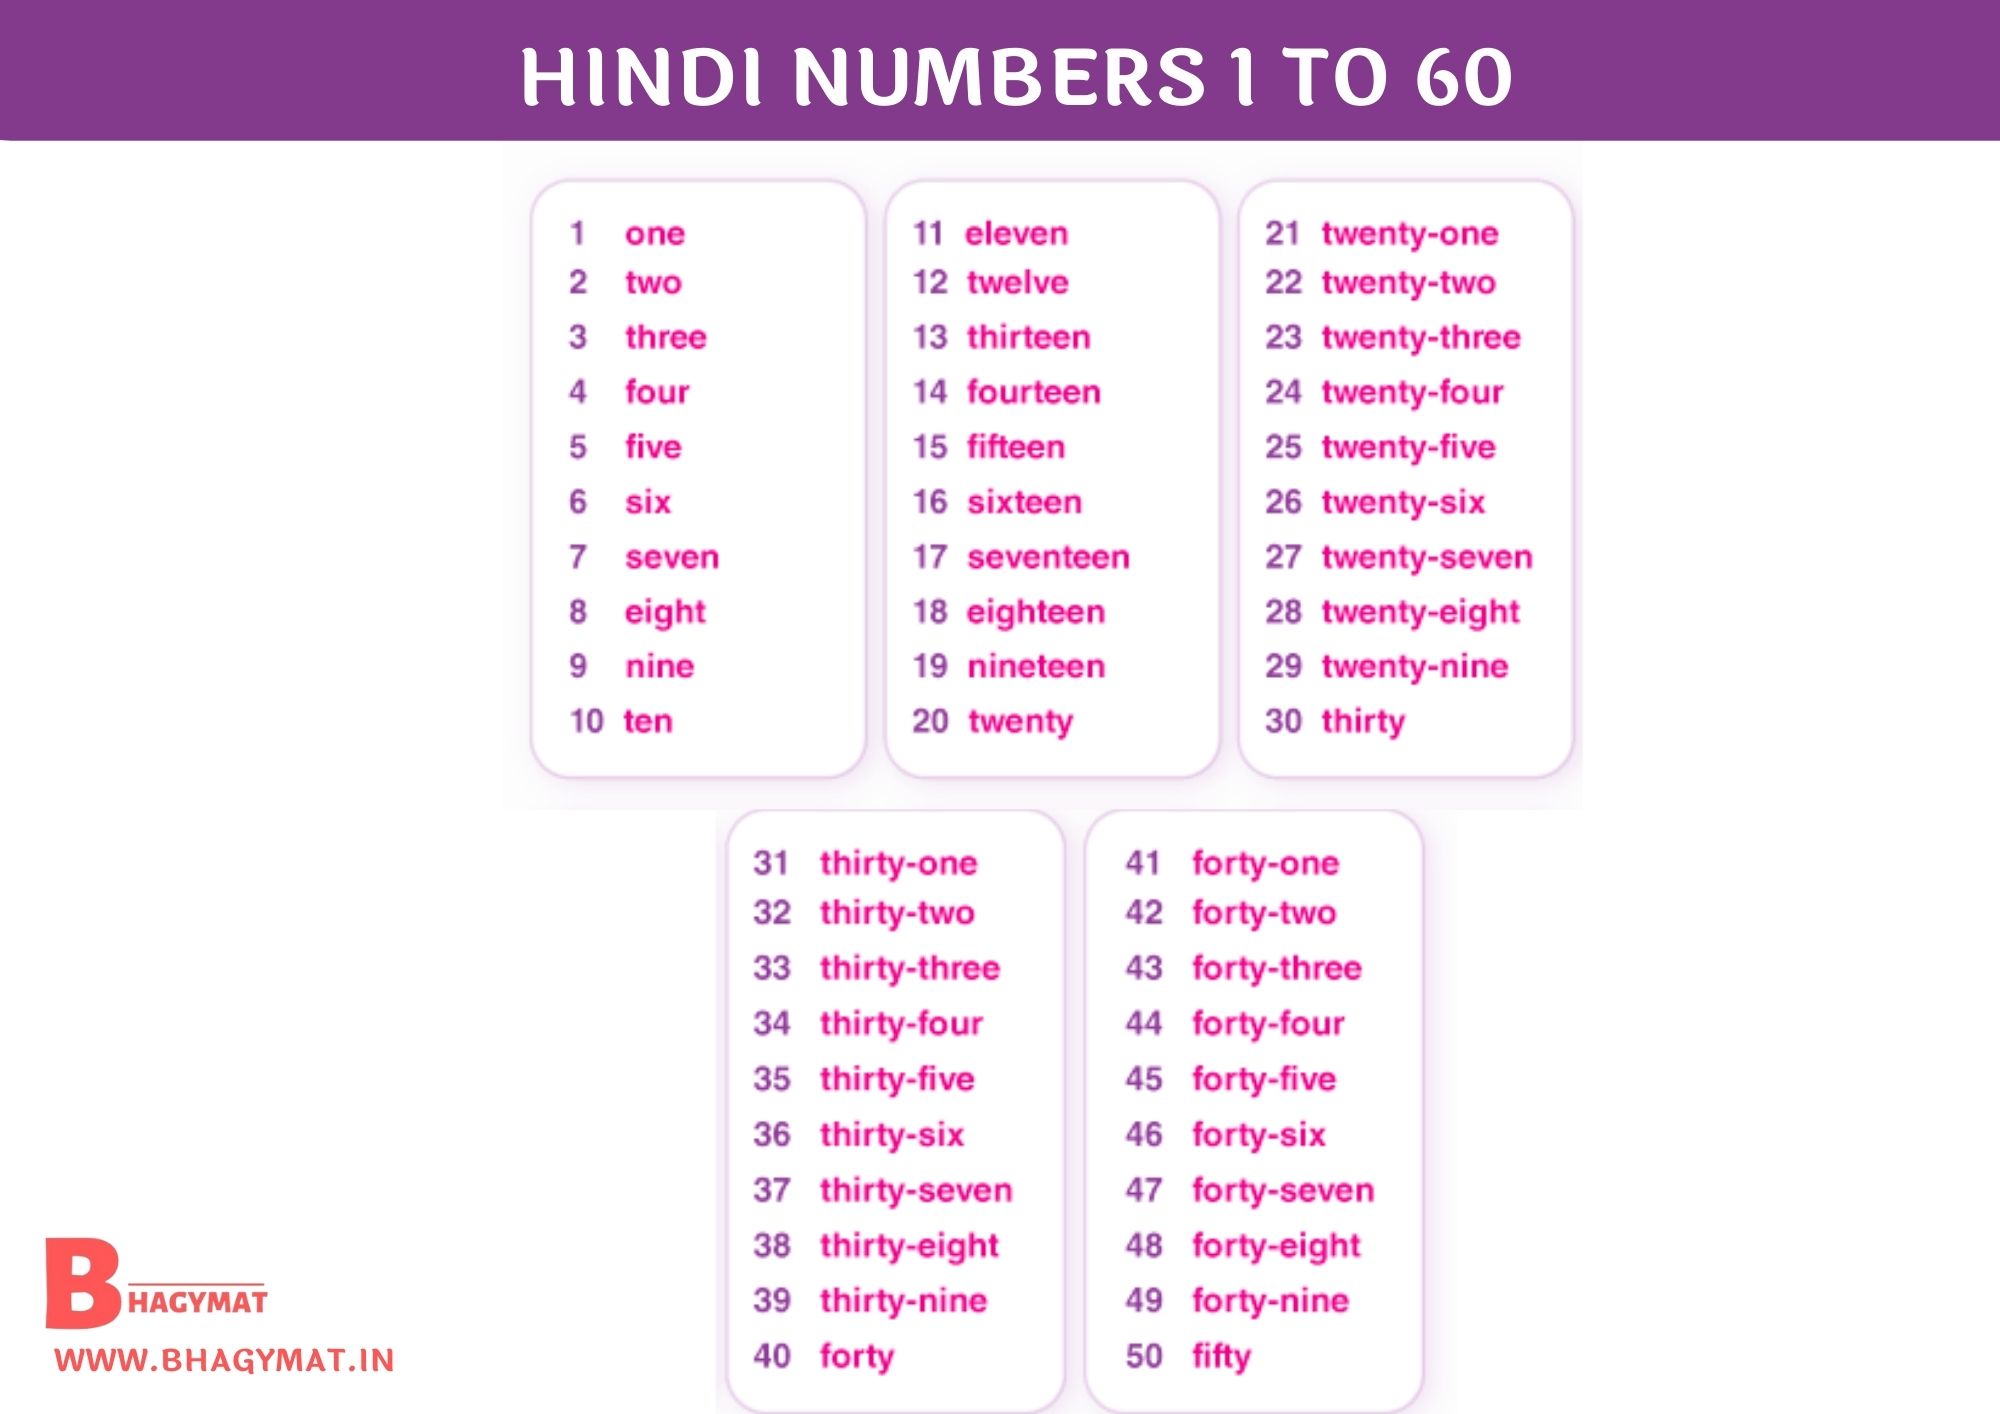 Hindi Numbers 1 To 60 | 1 To 60 Numbers In Hindi | Hindi Numbers 1-60 | Numbers Hindi 1 To 60 | 1 To 60 Hindi Numbers